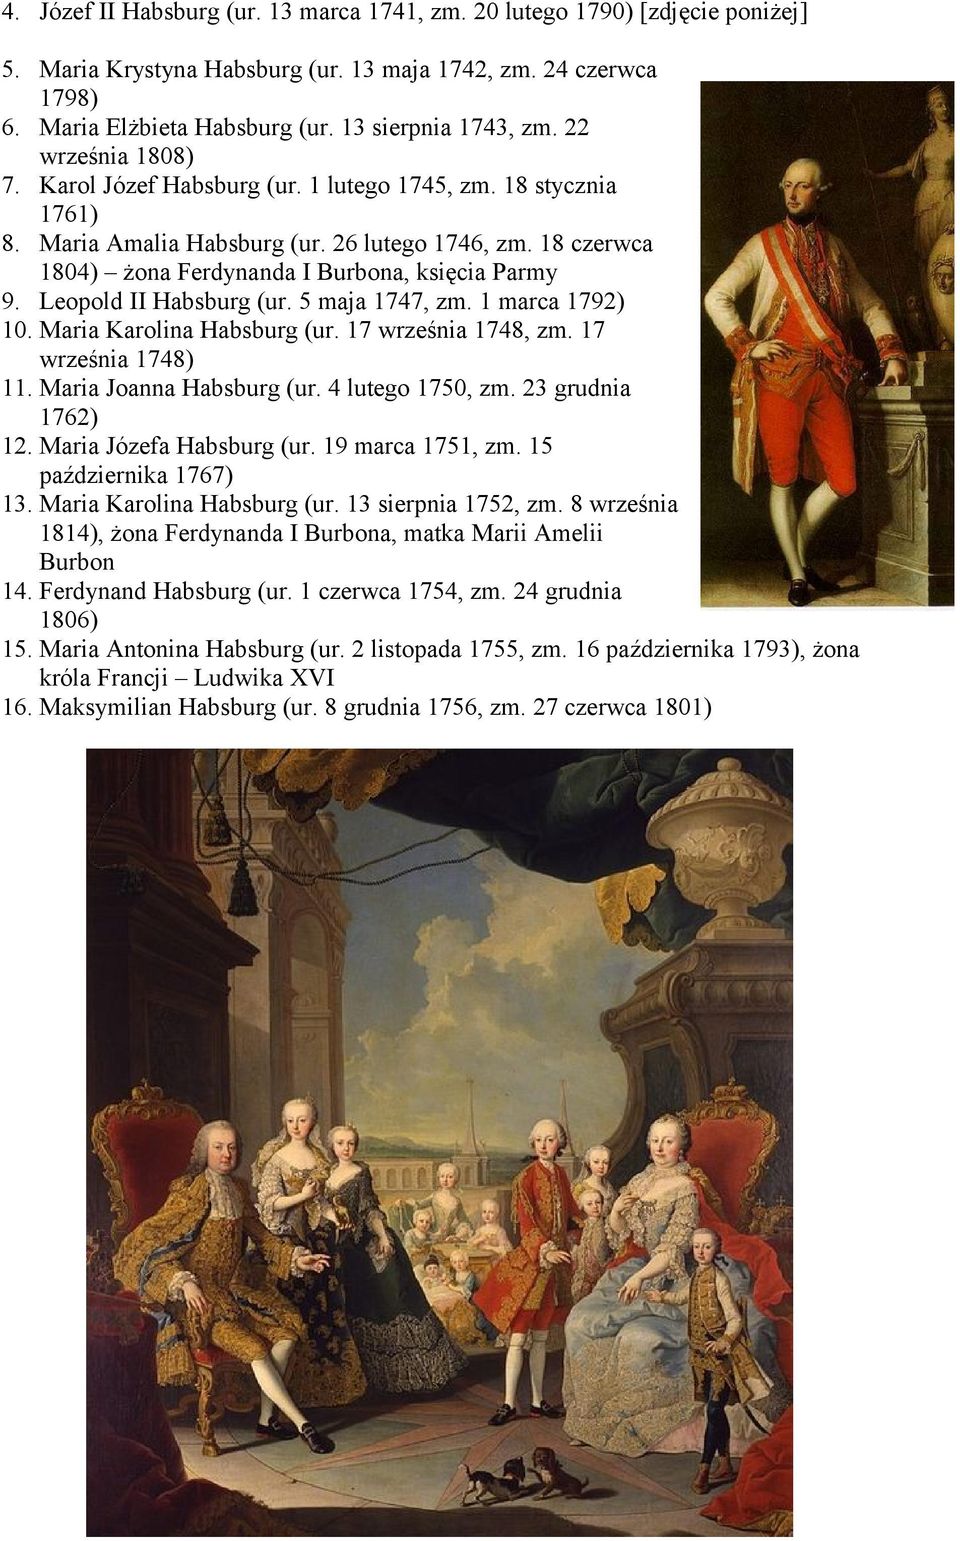 Leopold II Habsburg (ur. 5 maja 1747, zm. 1 marca 1792) 10. Maria Karolina Habsburg (ur. 17 września 1748, zm. 17 września 1748) 11. Maria Joanna Habsburg (ur. 4 lutego 1750, zm. 23 grudnia 1762) 12.